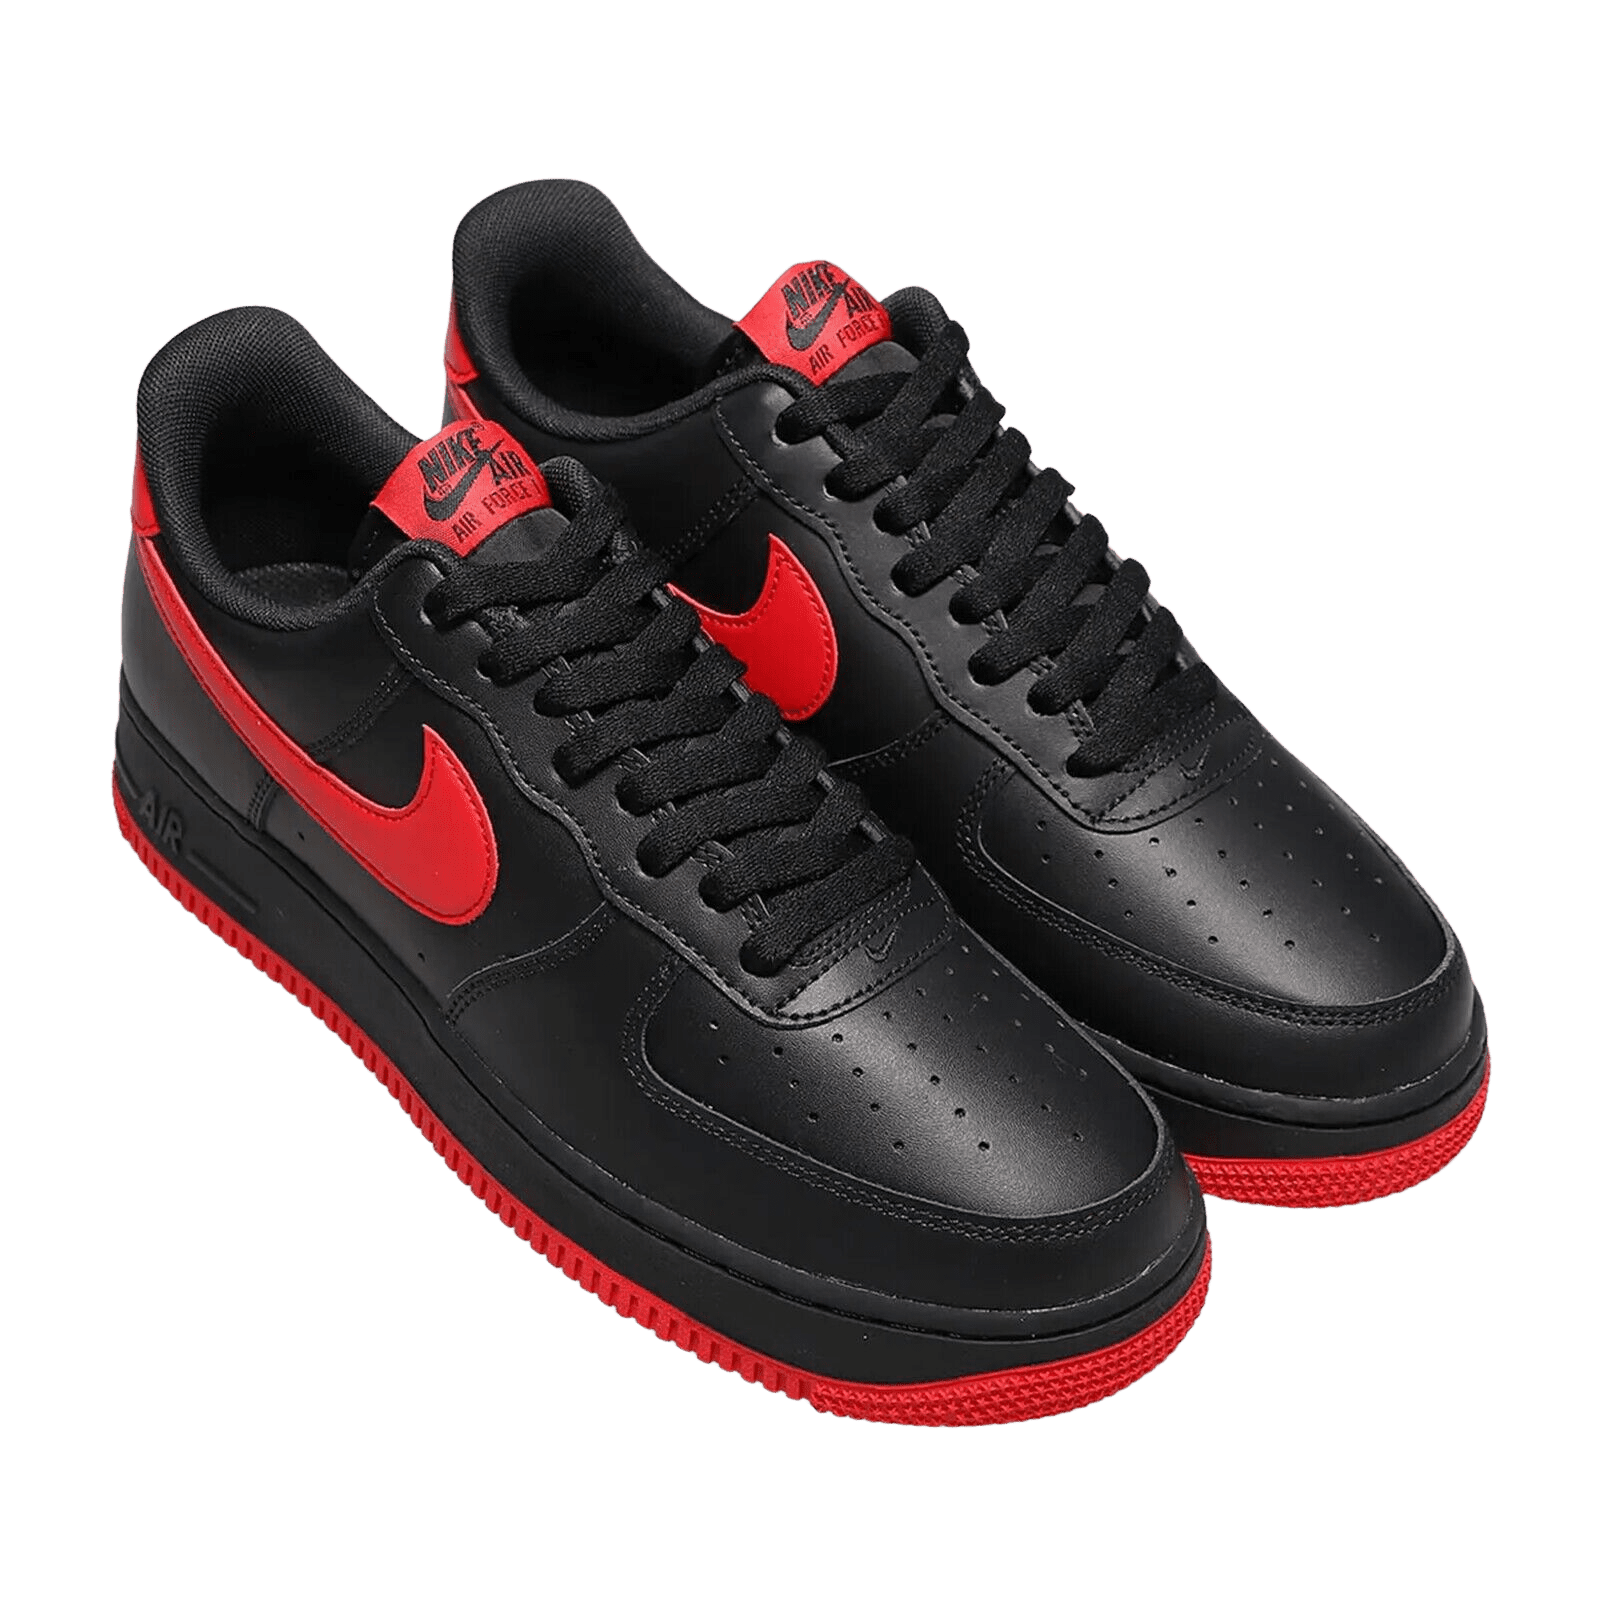 Black Red Air Force 1 Sneakers | eBay